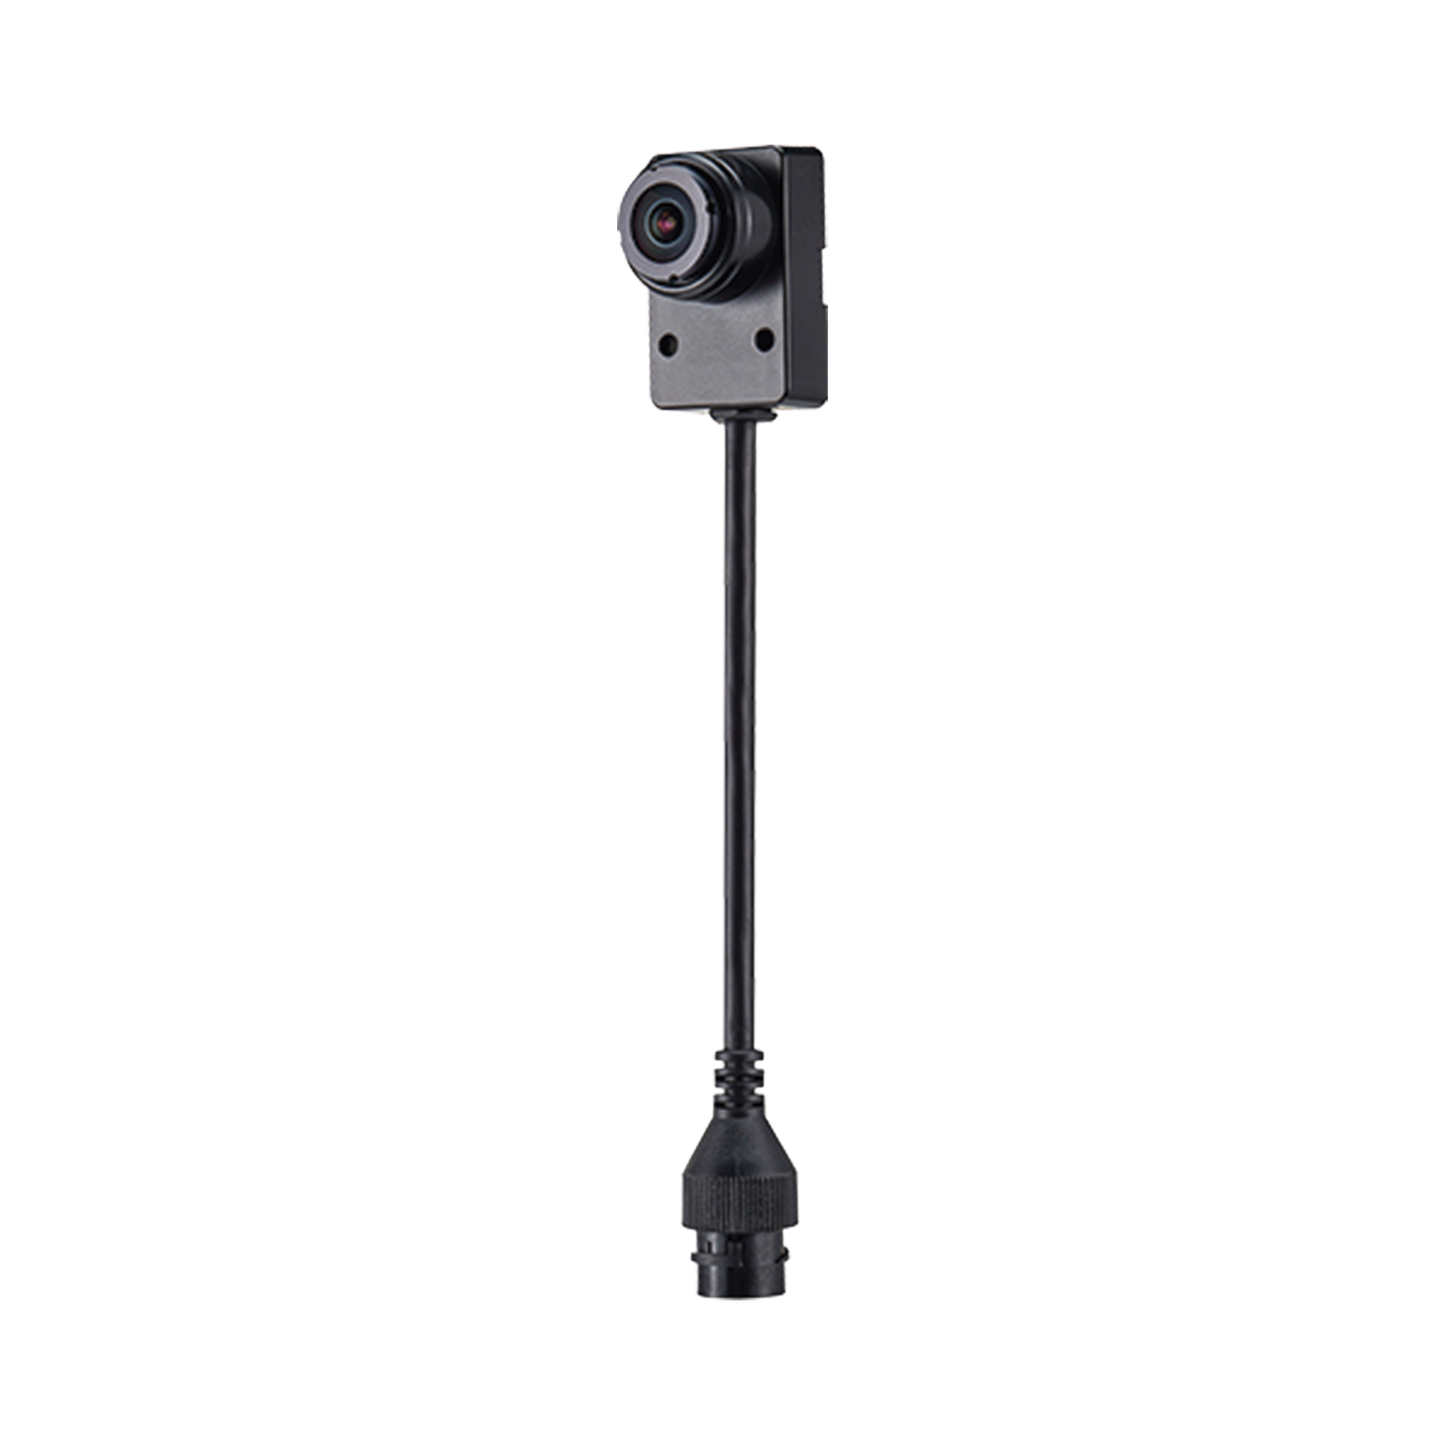 Lente fijo de 2.4mm 2MP compatible con Cámara PNM-9000QB forma tipo L